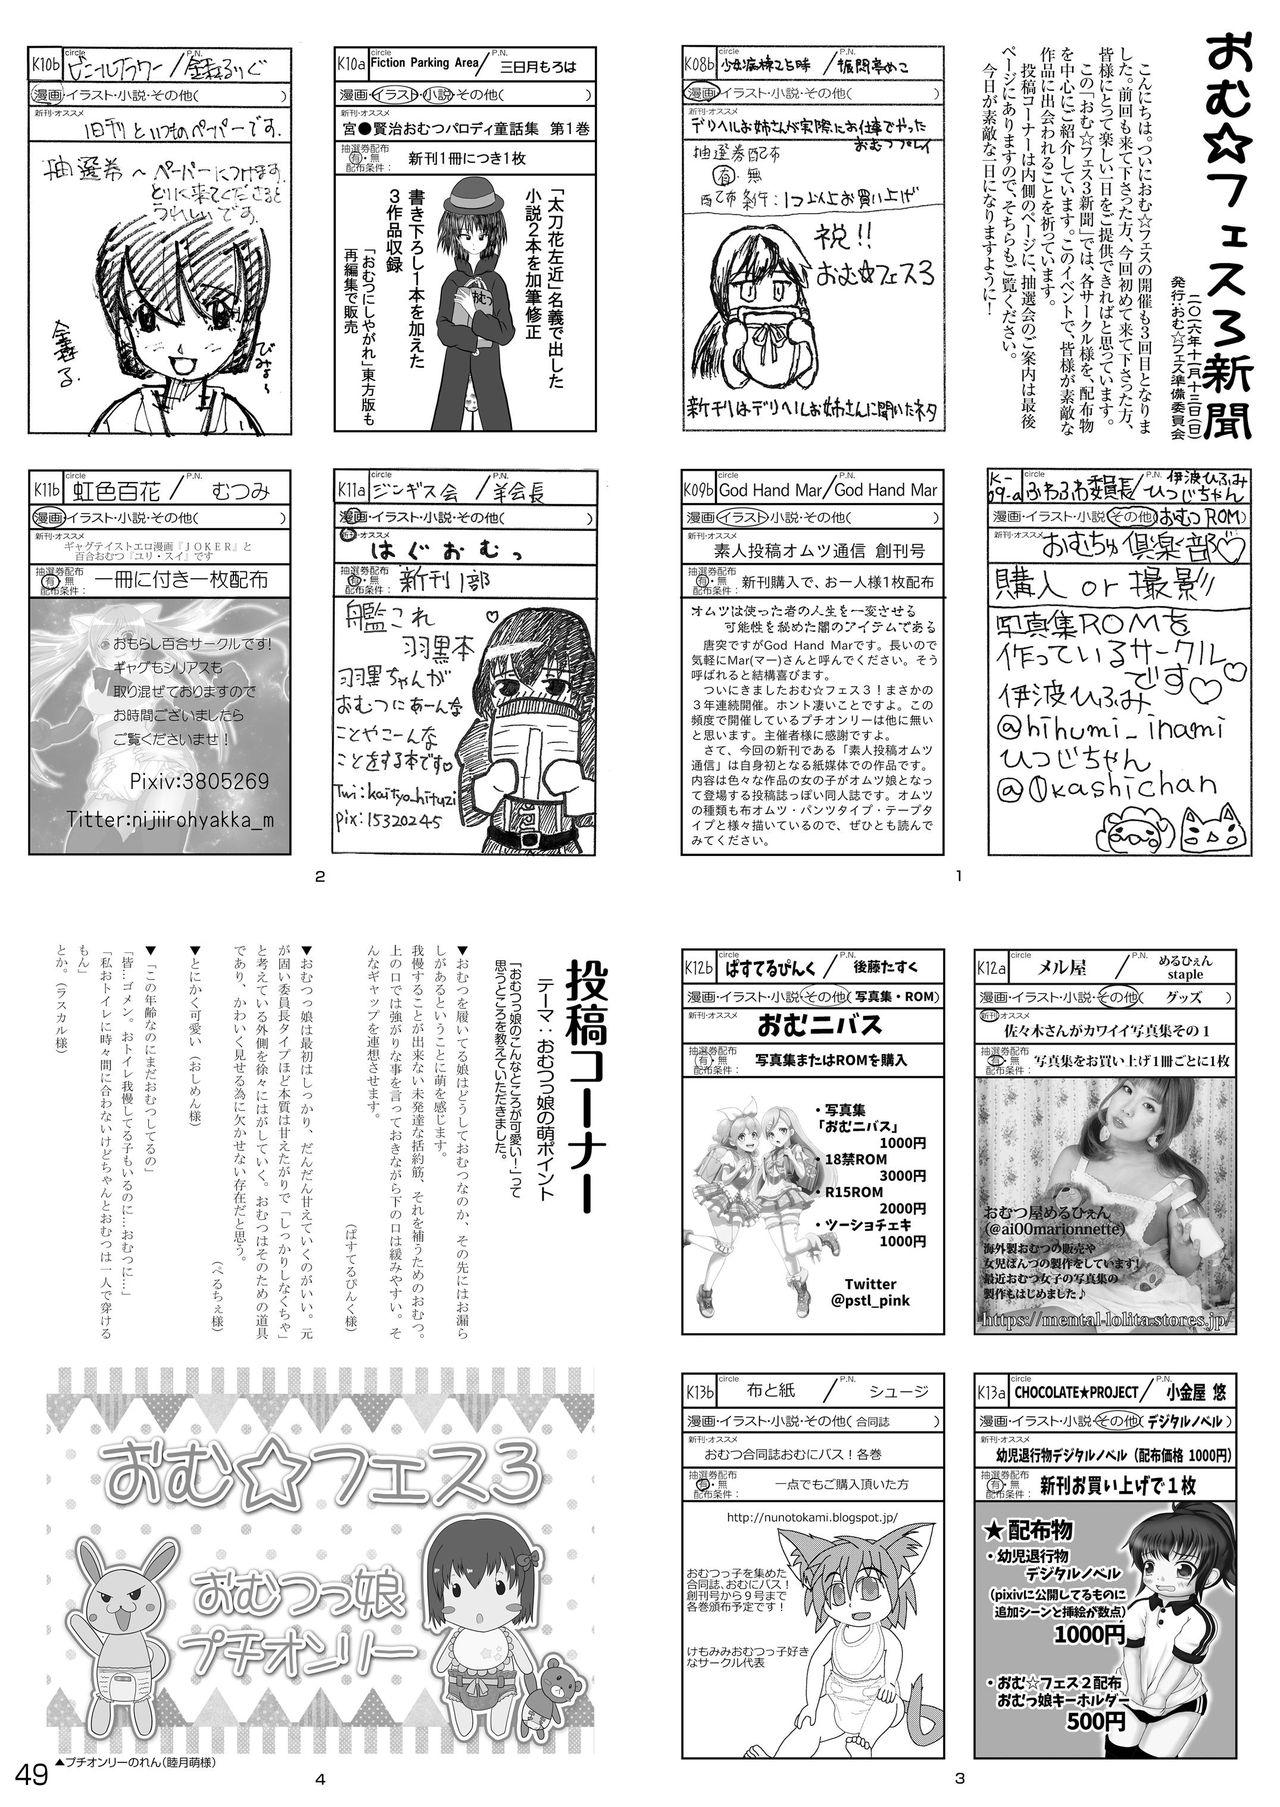 Omu☆Fes 4 Kaisai Kinen Goudoushi "Omutsukko PARTY! 4" 48